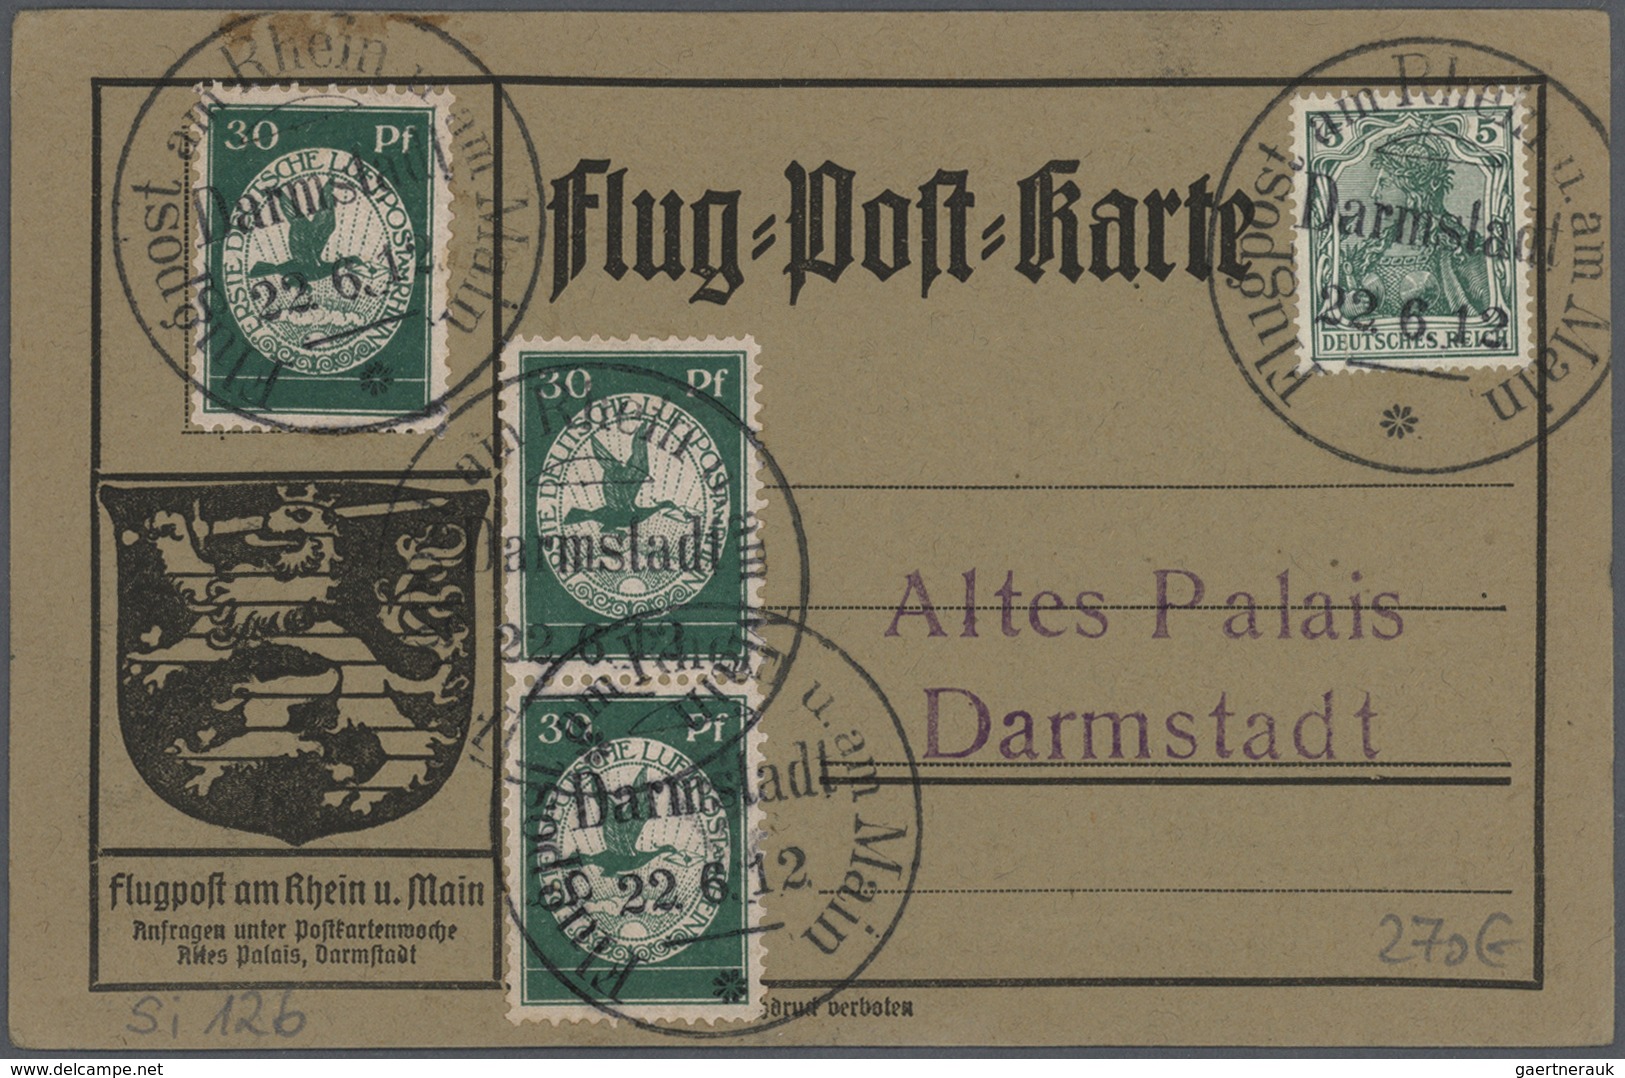 24842 Zeppelinpost Deutschland: 1912/1930, Sammlung von knapp 100 Belegen mit Feldpost/Luftschiffstempel b